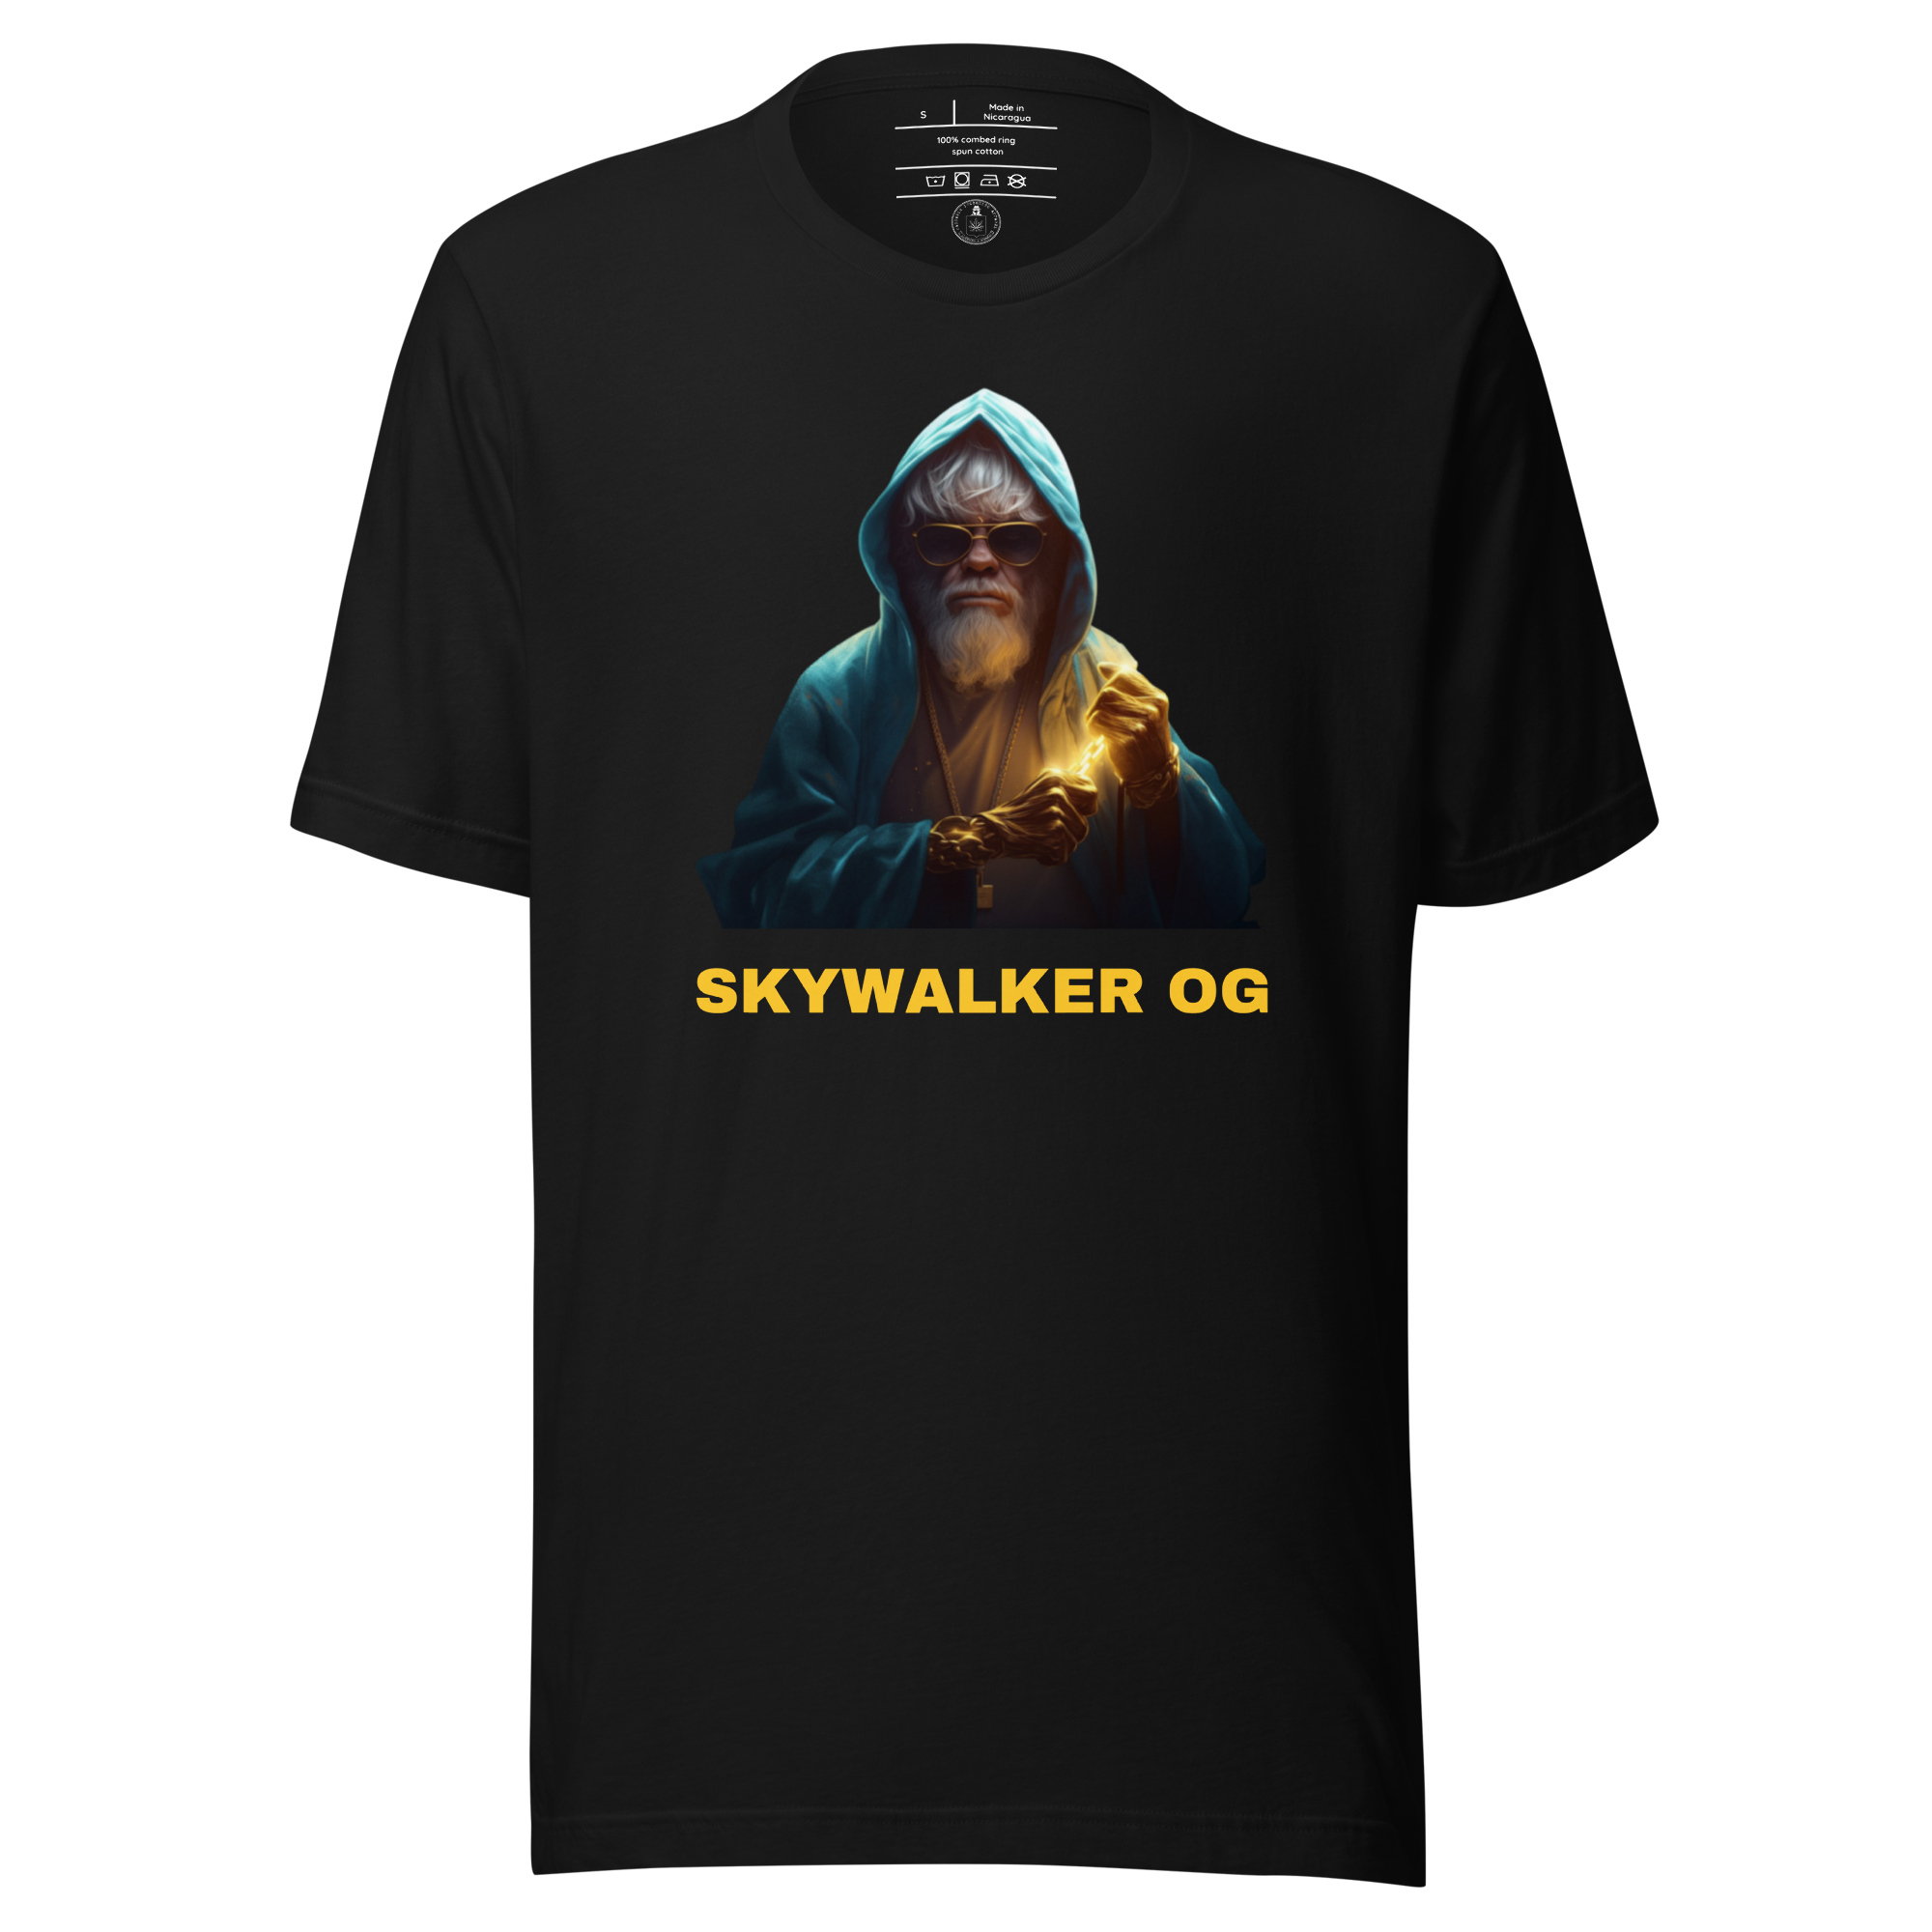 3D Skywalker OG shirt mockup - Black